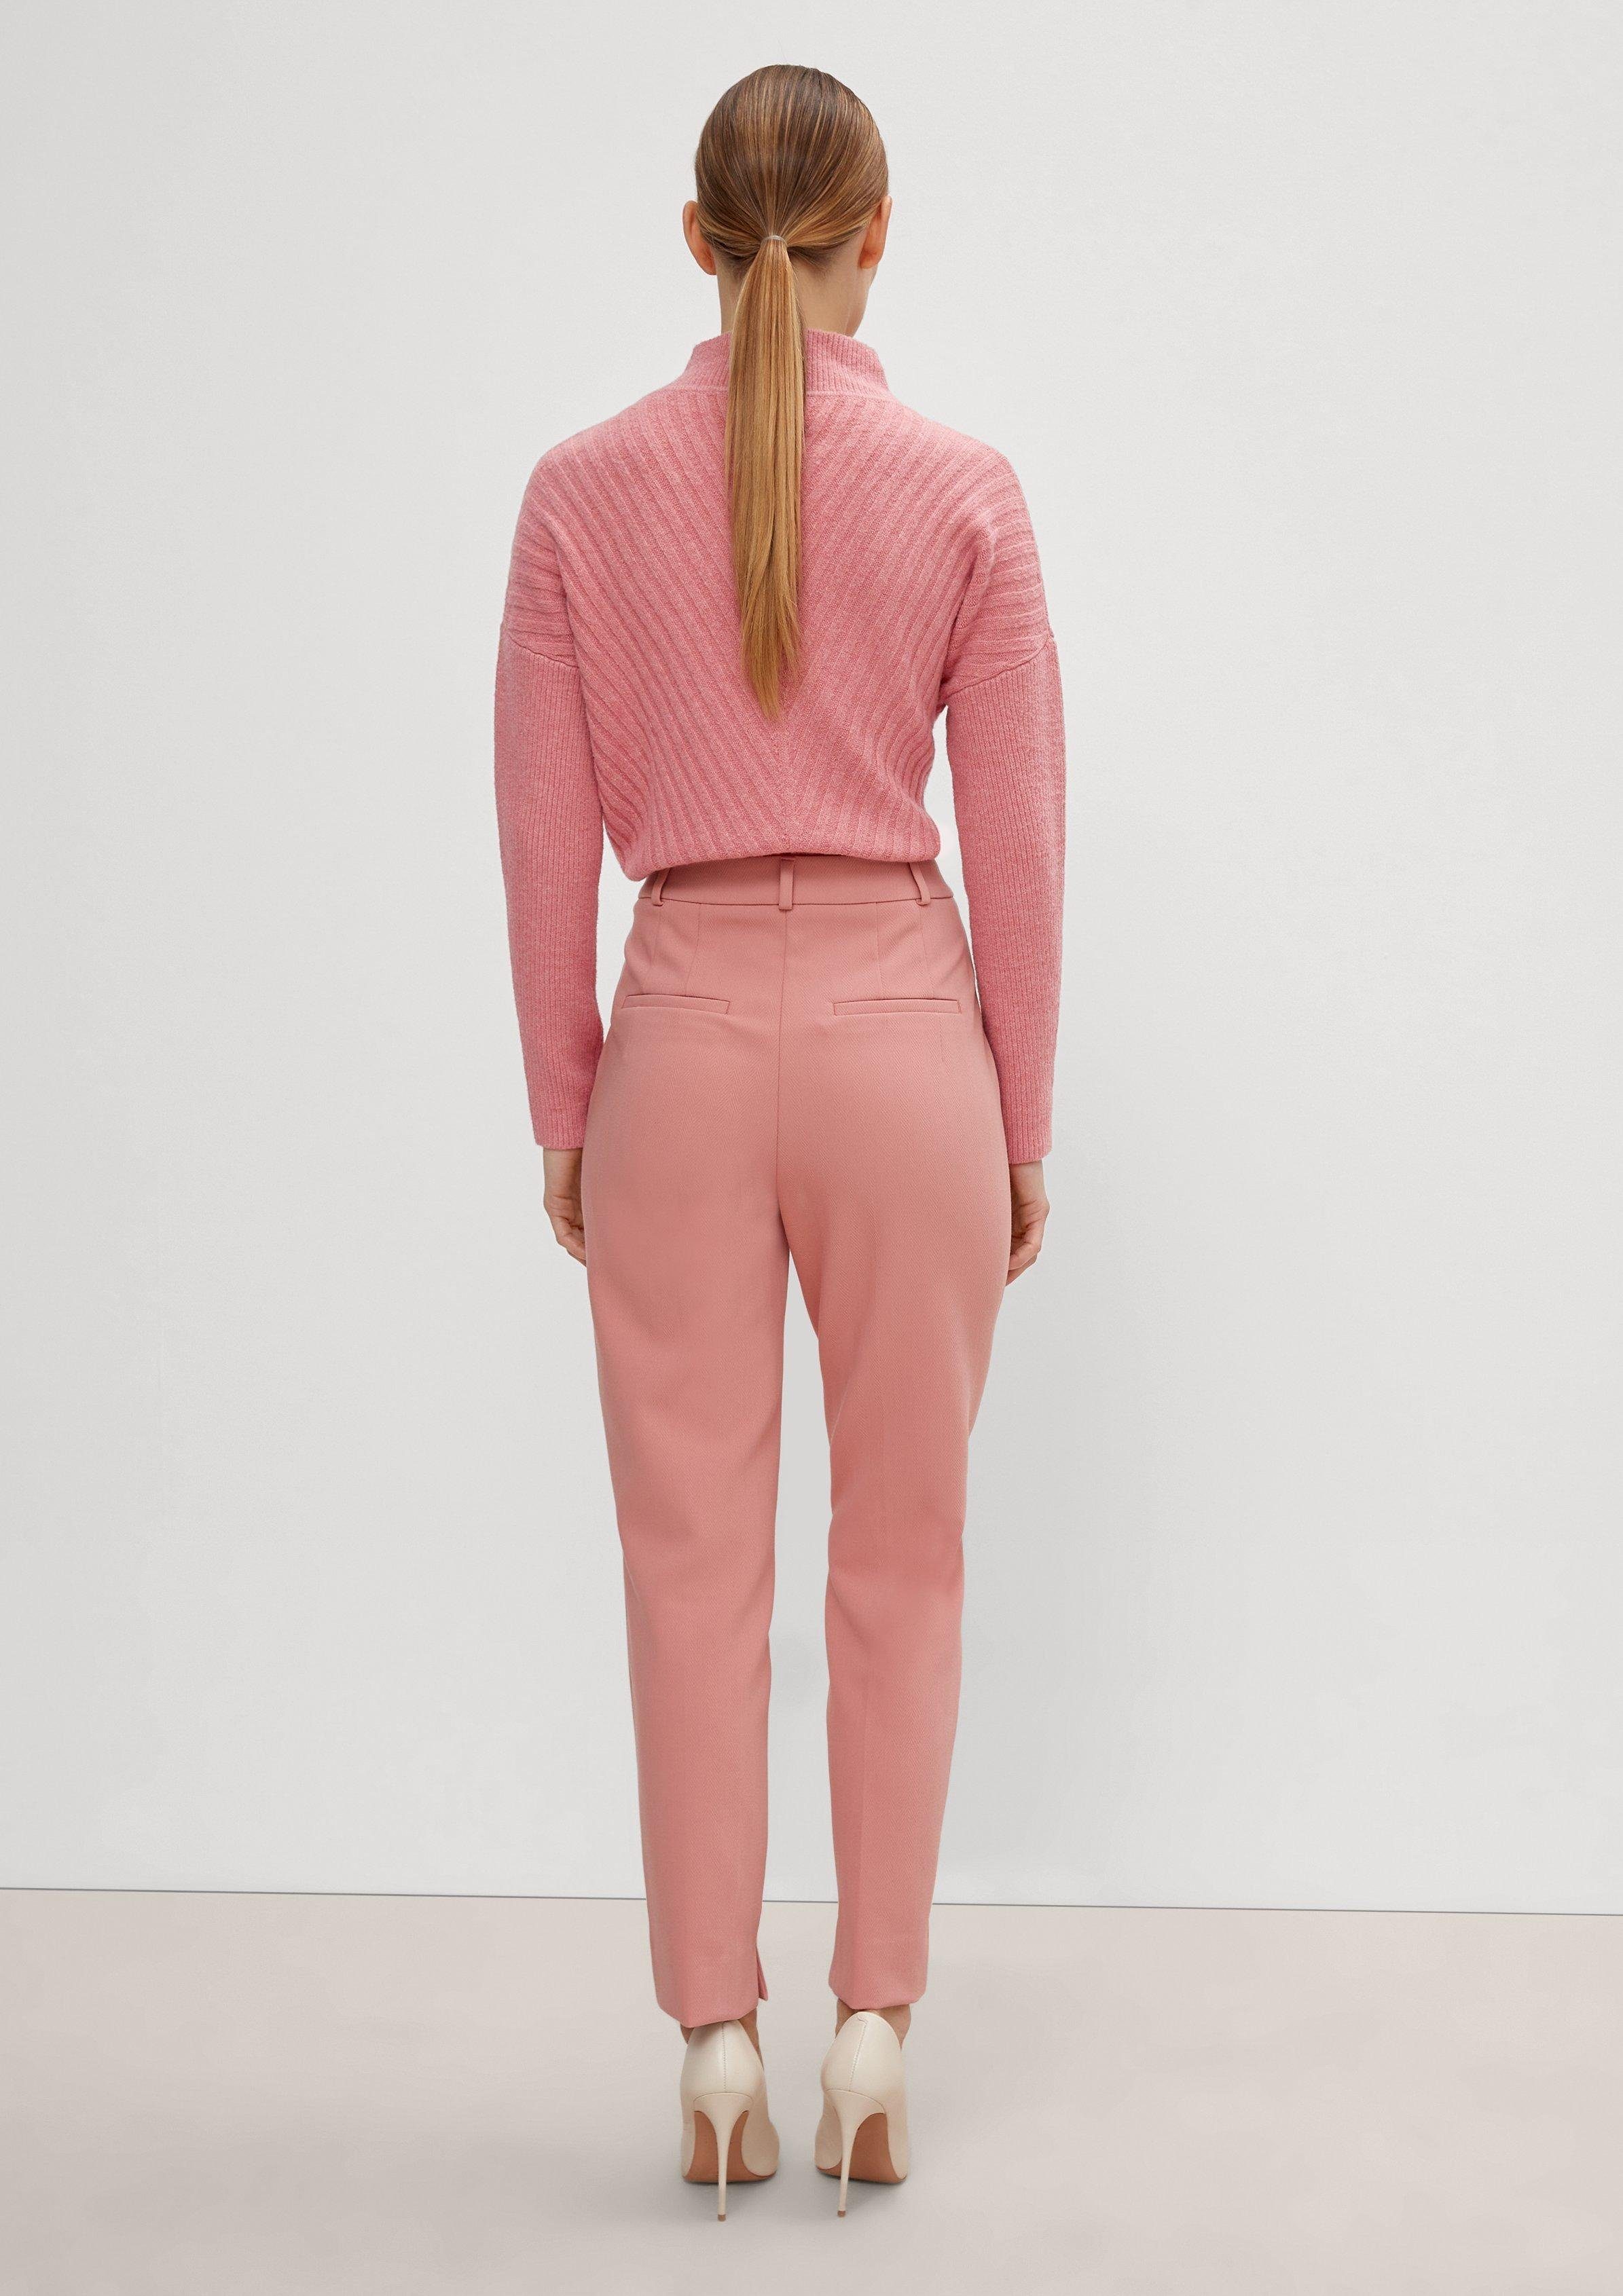 Langarmshirt Wolle aus Comma Strickpullover Baumwollmix rosa mit